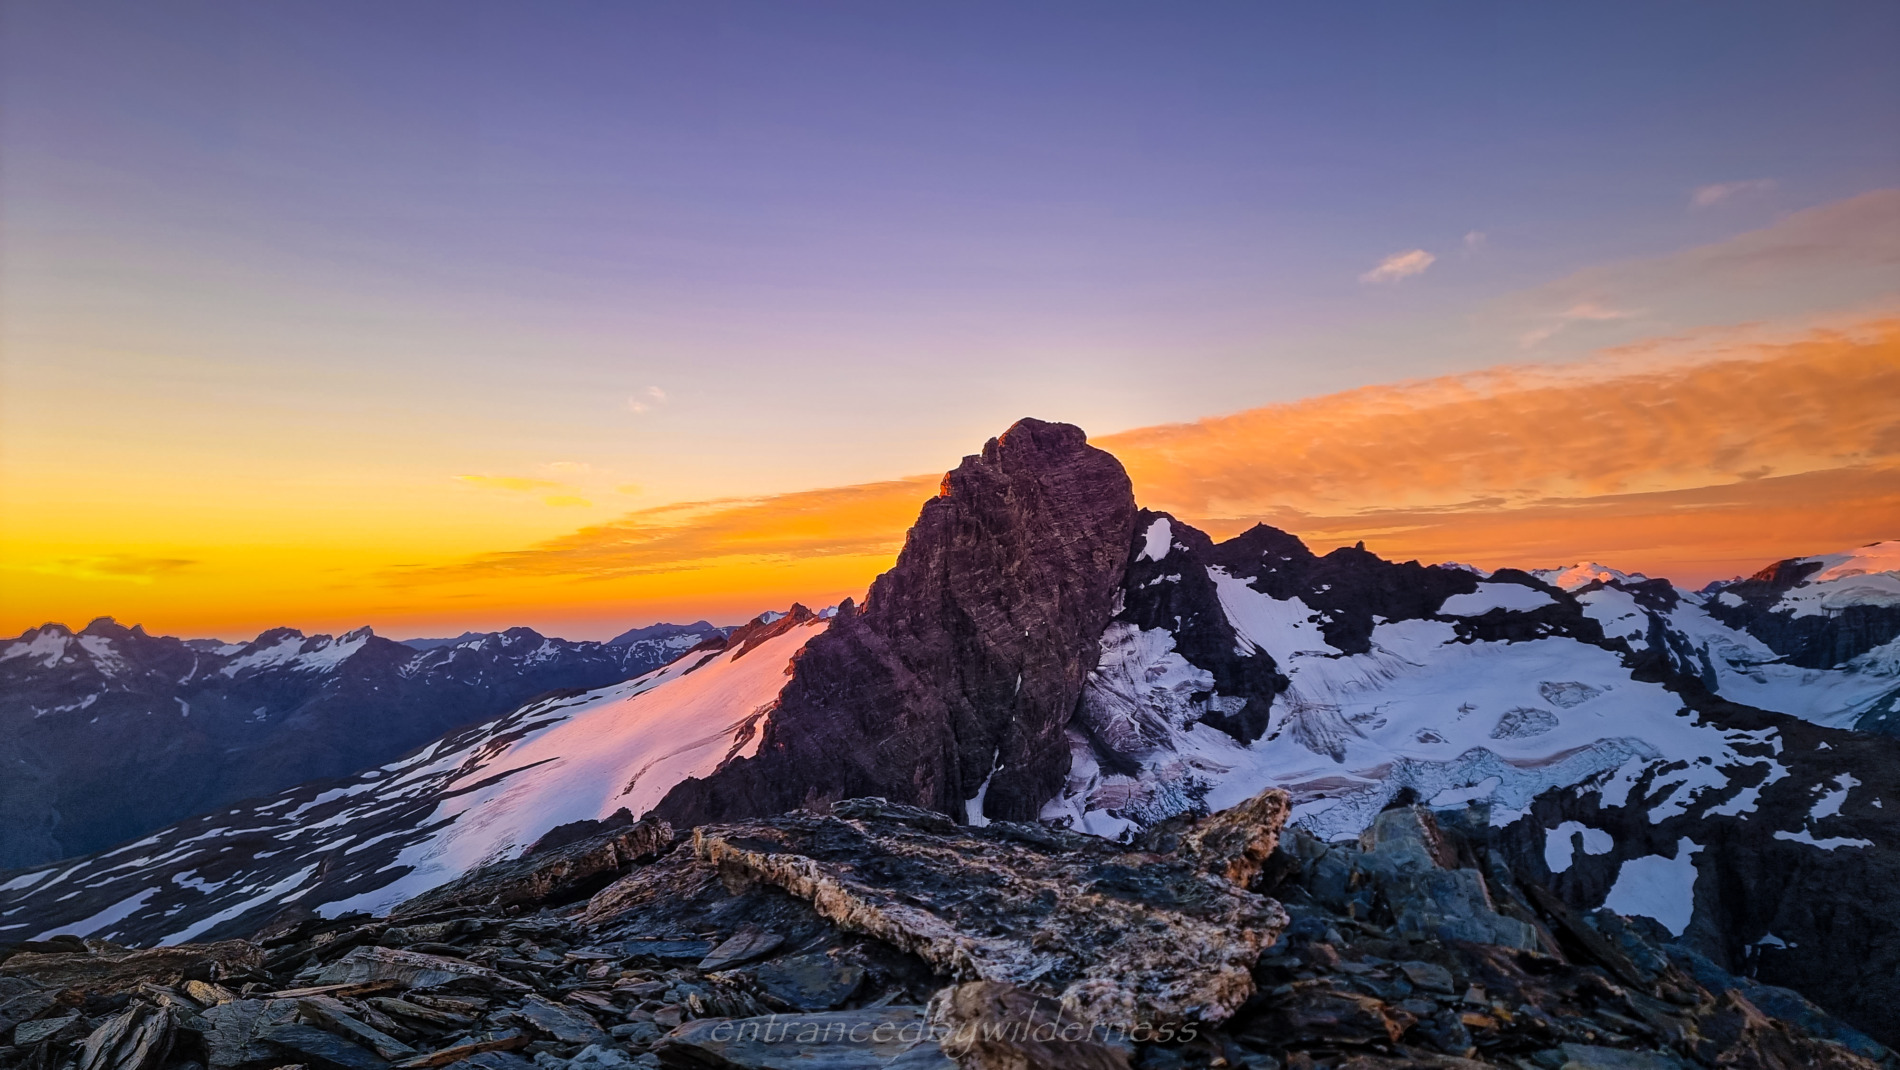 Sir William Peak (Frances Glacier to left)